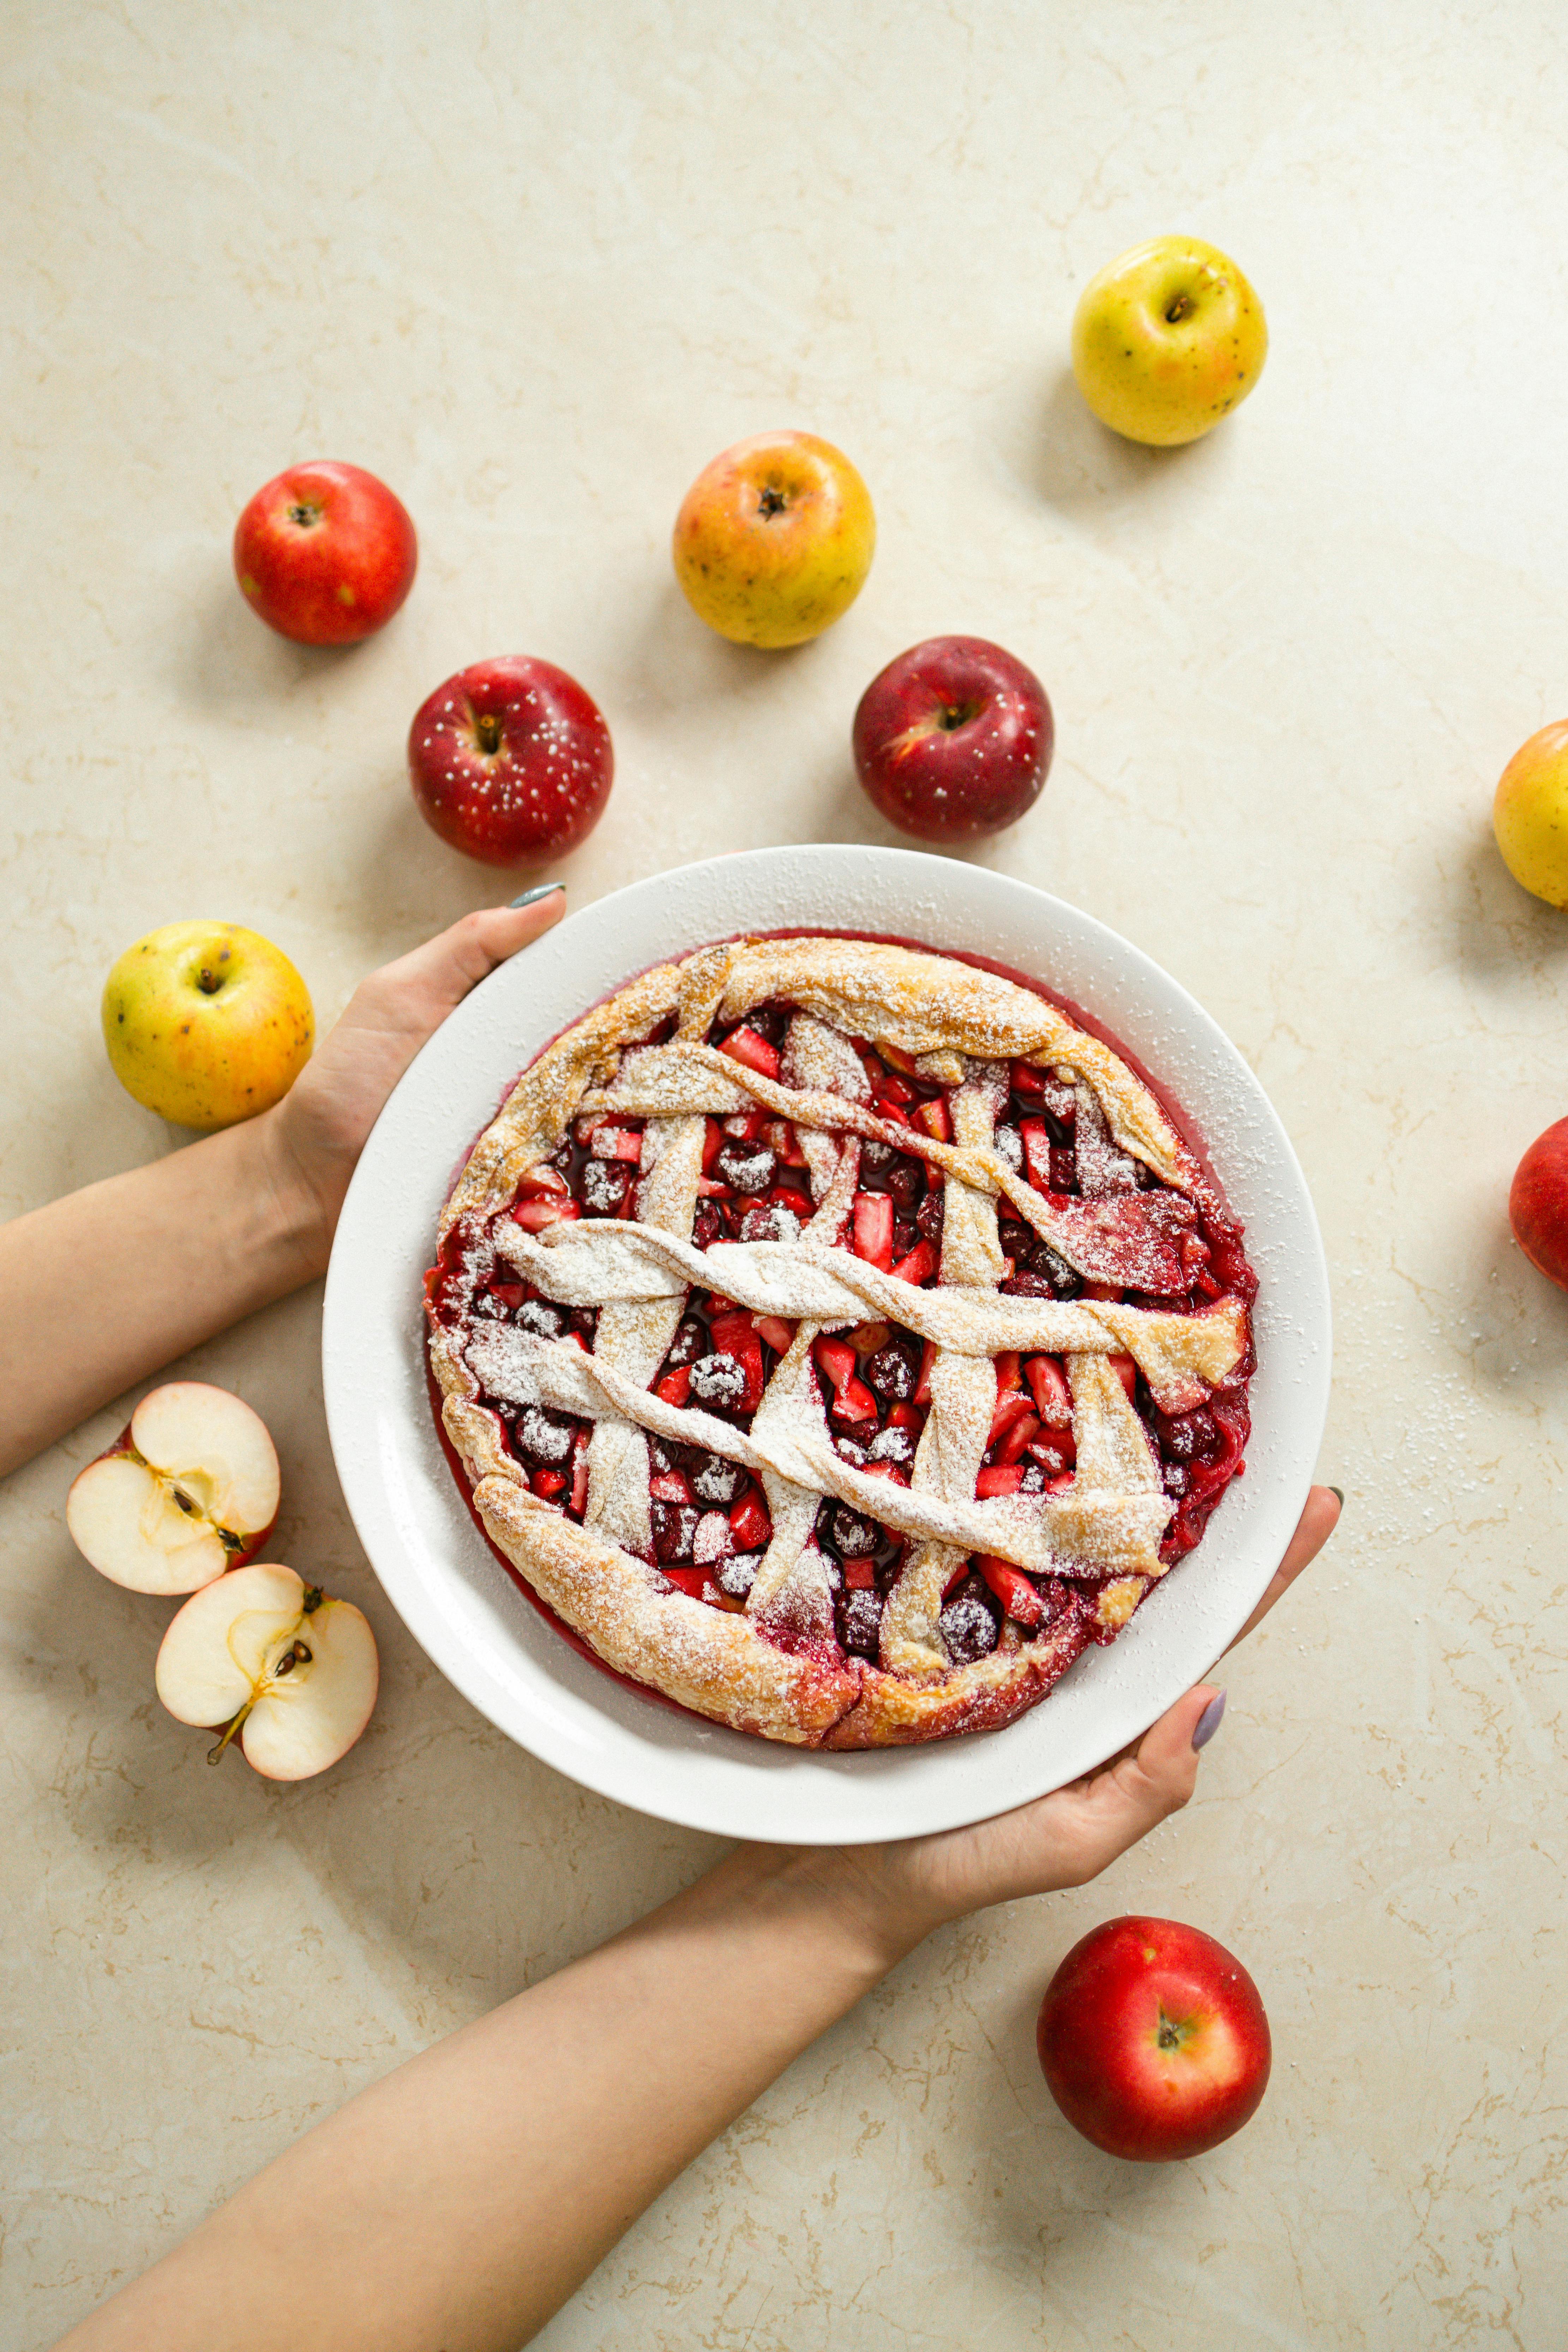 Plato de tarta de manzana sostenido por una persona | Foto: Pexels